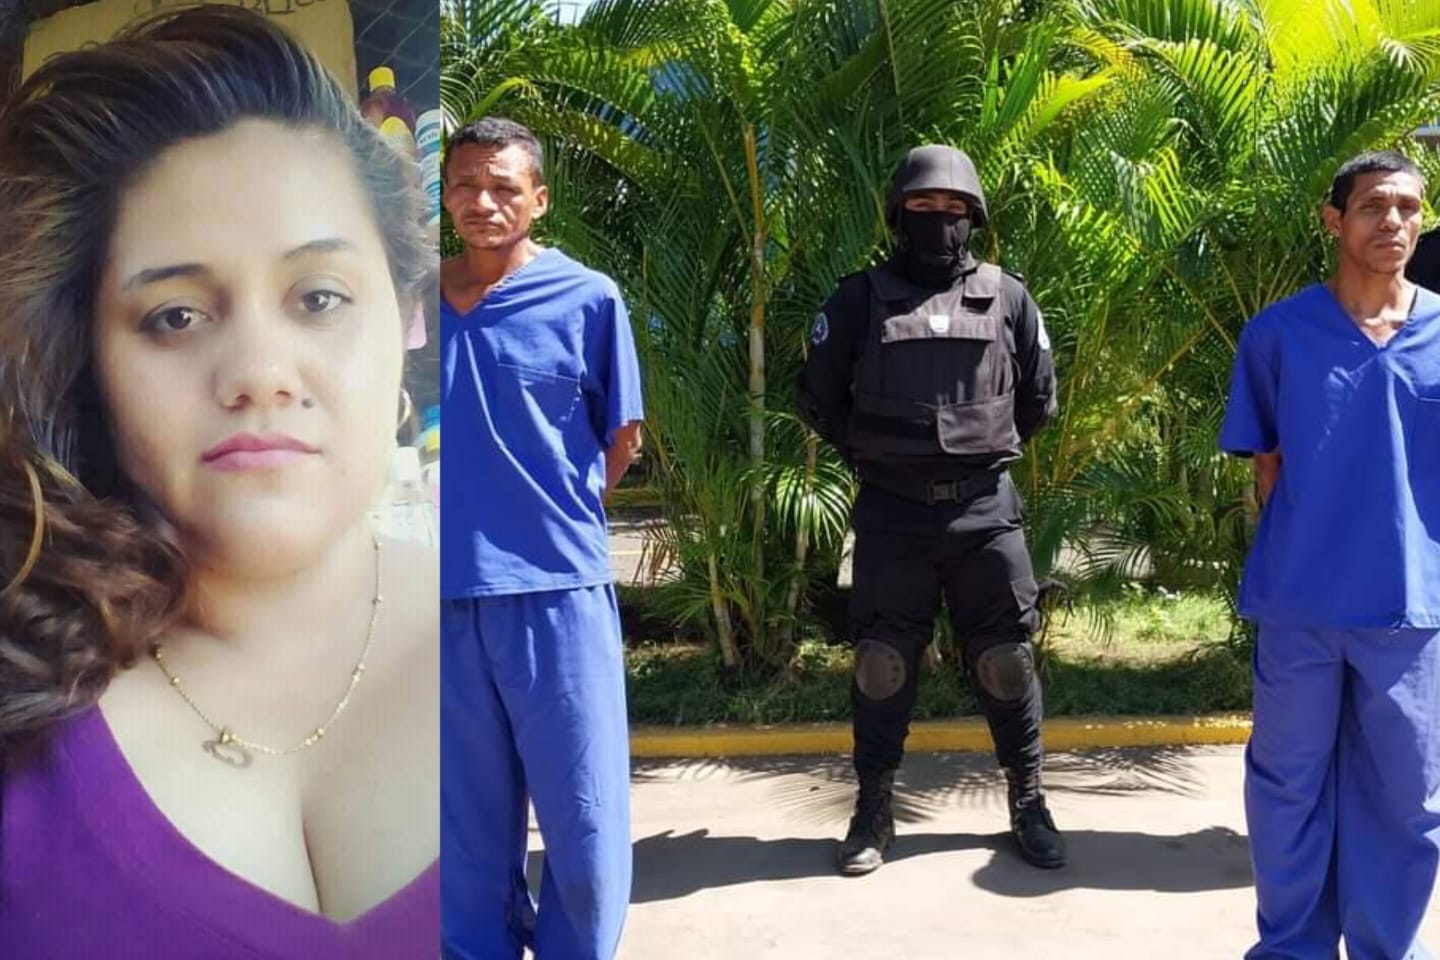 femicidios en nicaragua